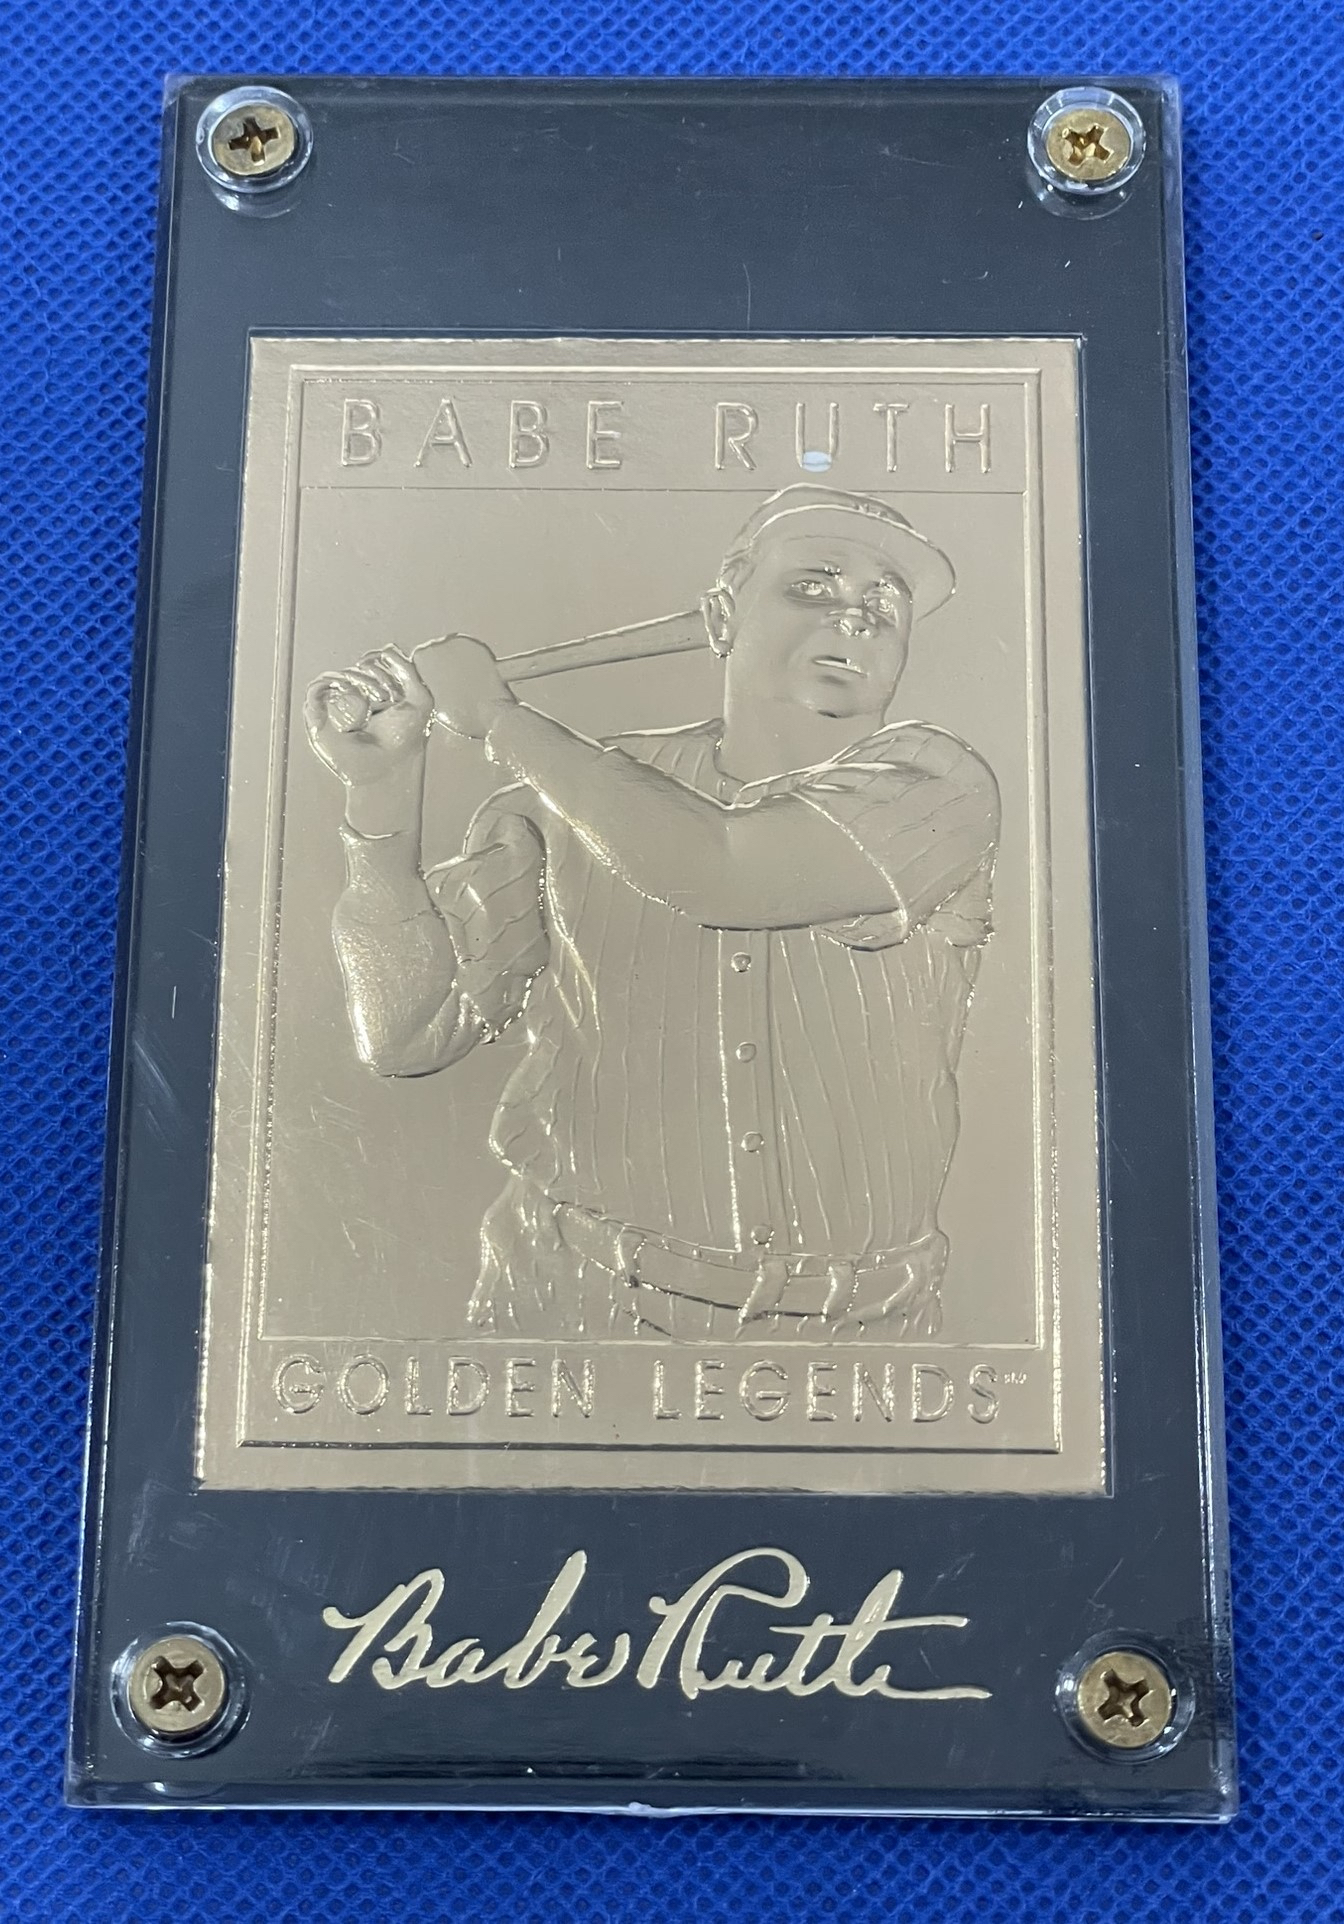 Babe Ruth Gold card 1994